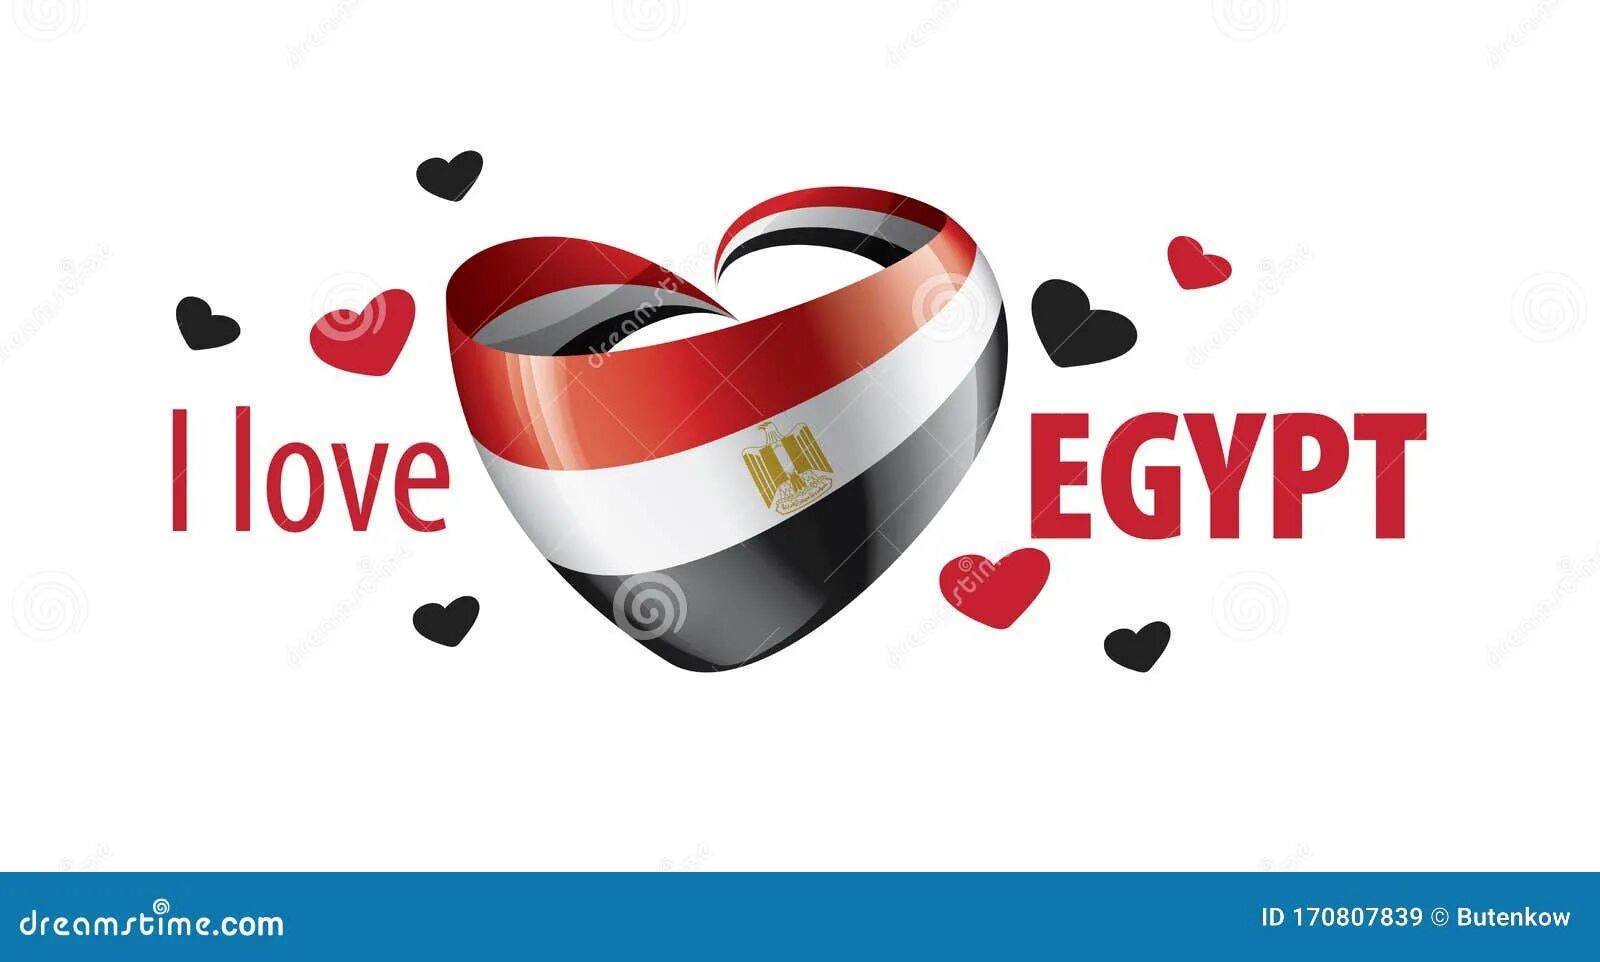 I love egypt. Egypt надпись. Я люблю Египет. Надпись я люблю Египет. I Love Egypt фото.